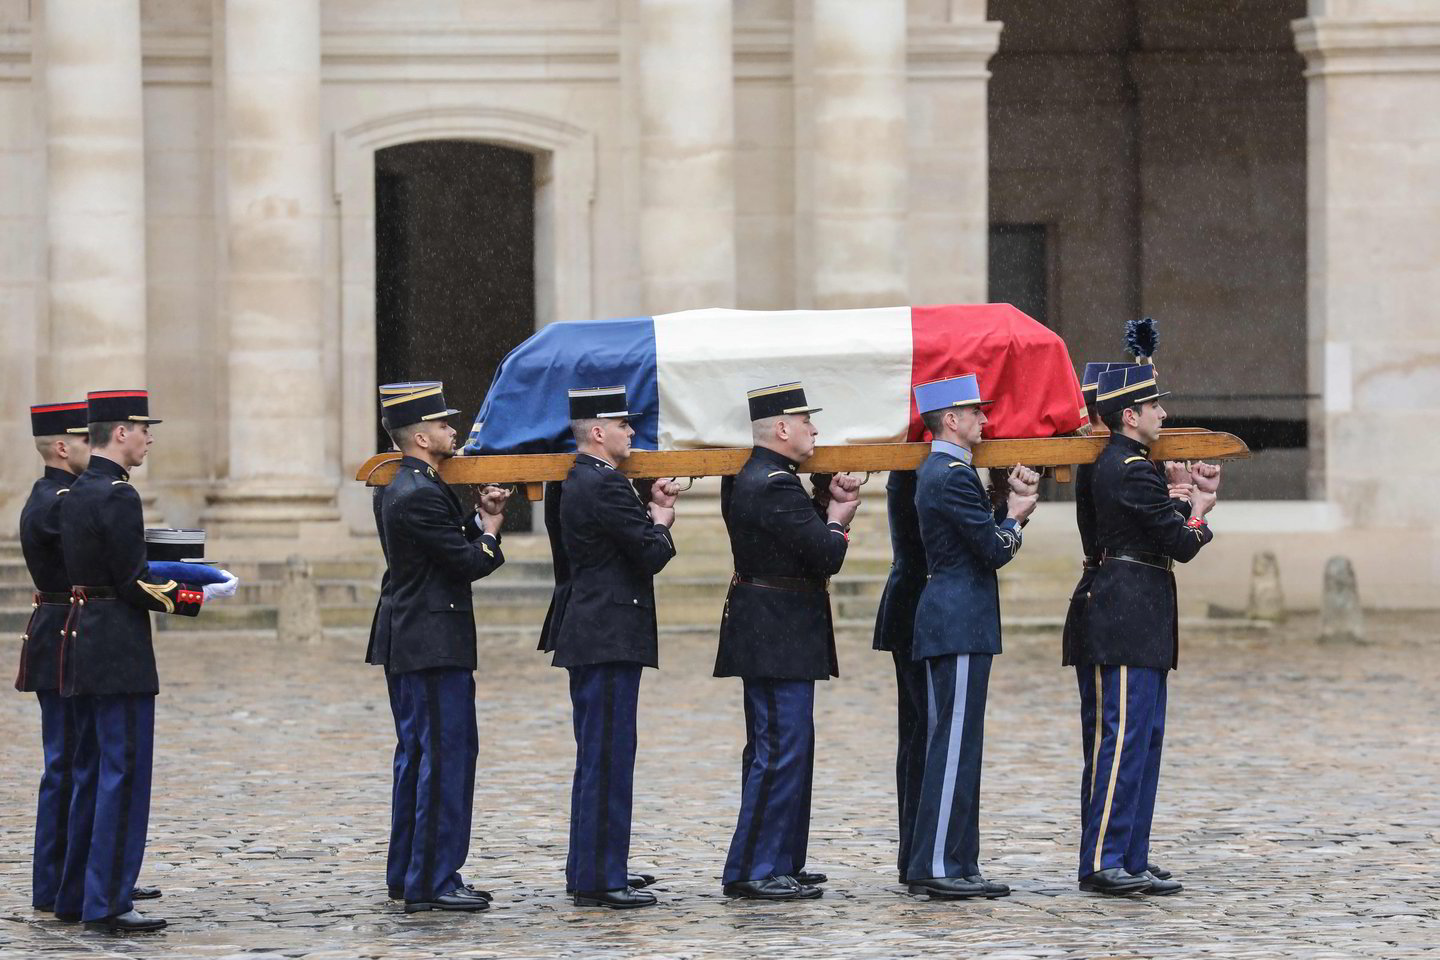  Prancūzai pagerbė žuvusio policininko atminimą.<br> AFP/Scanpix nuotr.